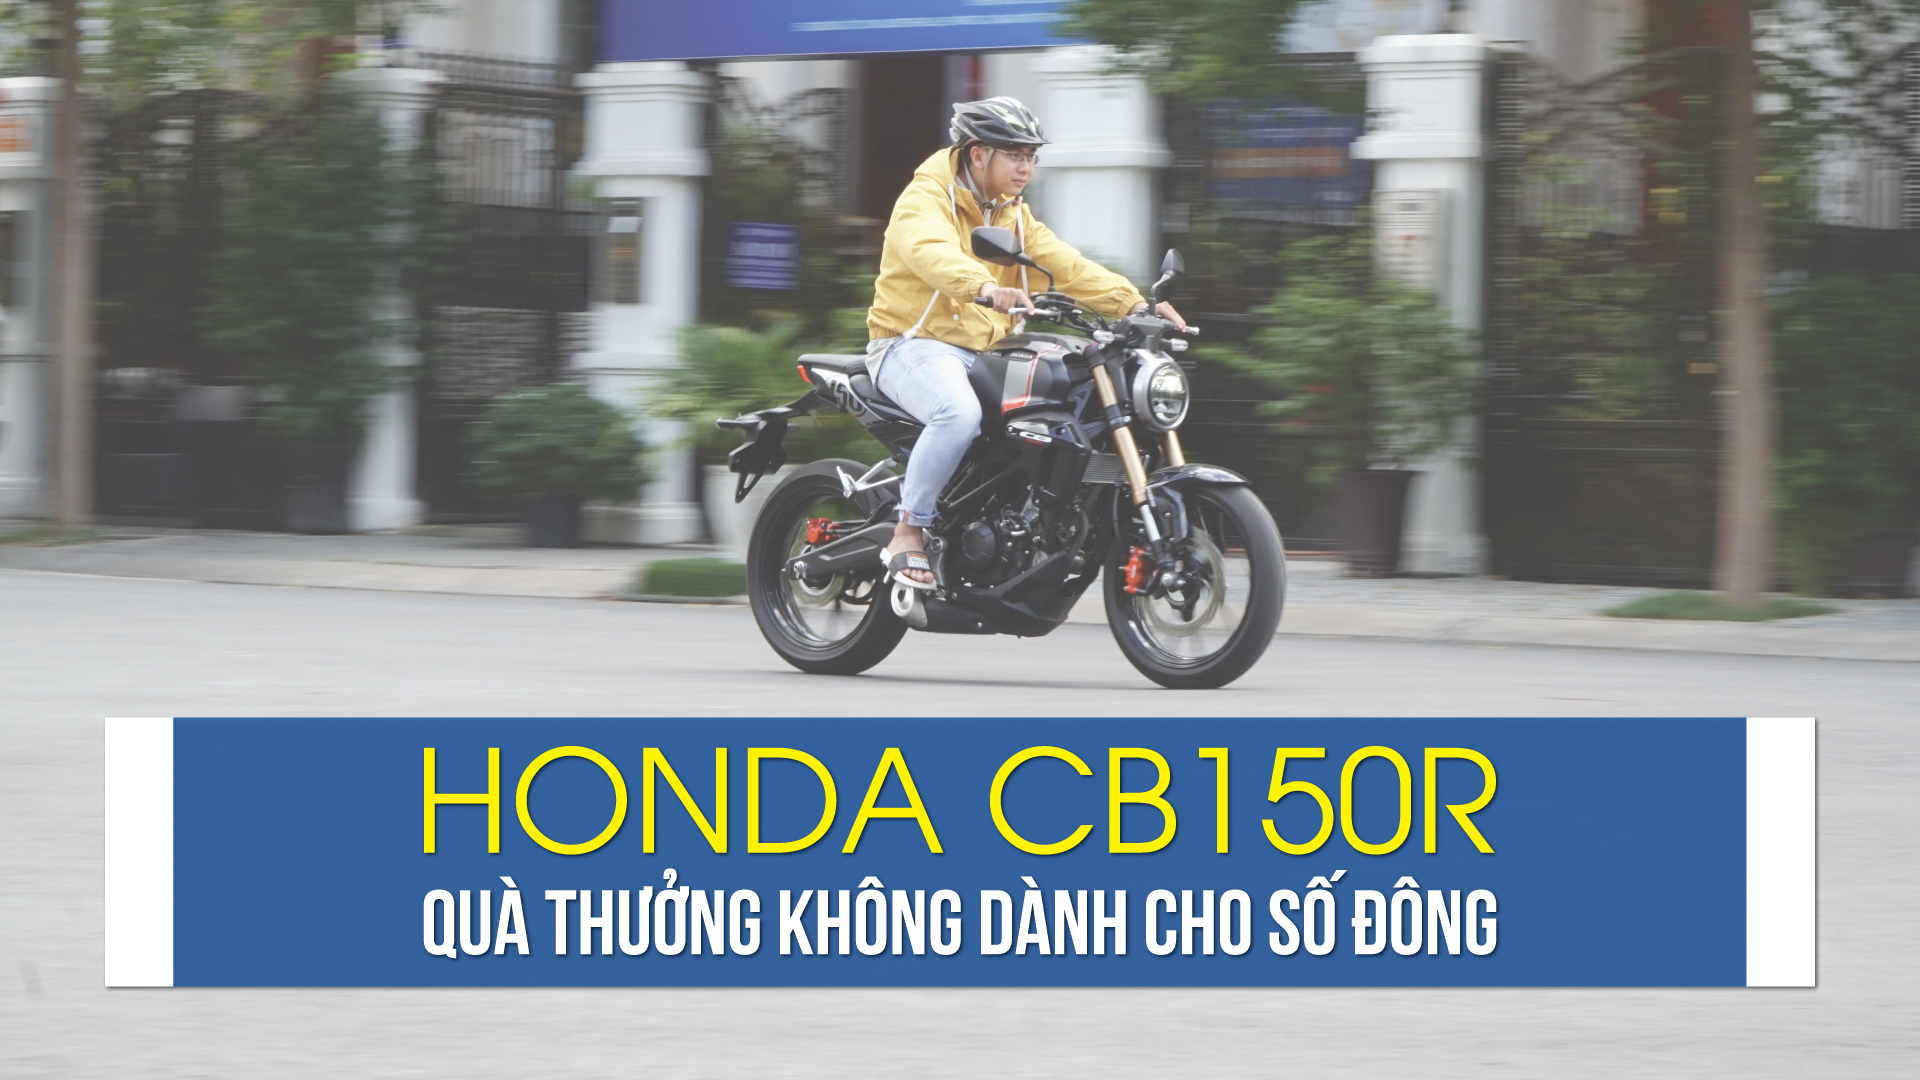 Honda CB150R: quà thưởng không dành cho số đông